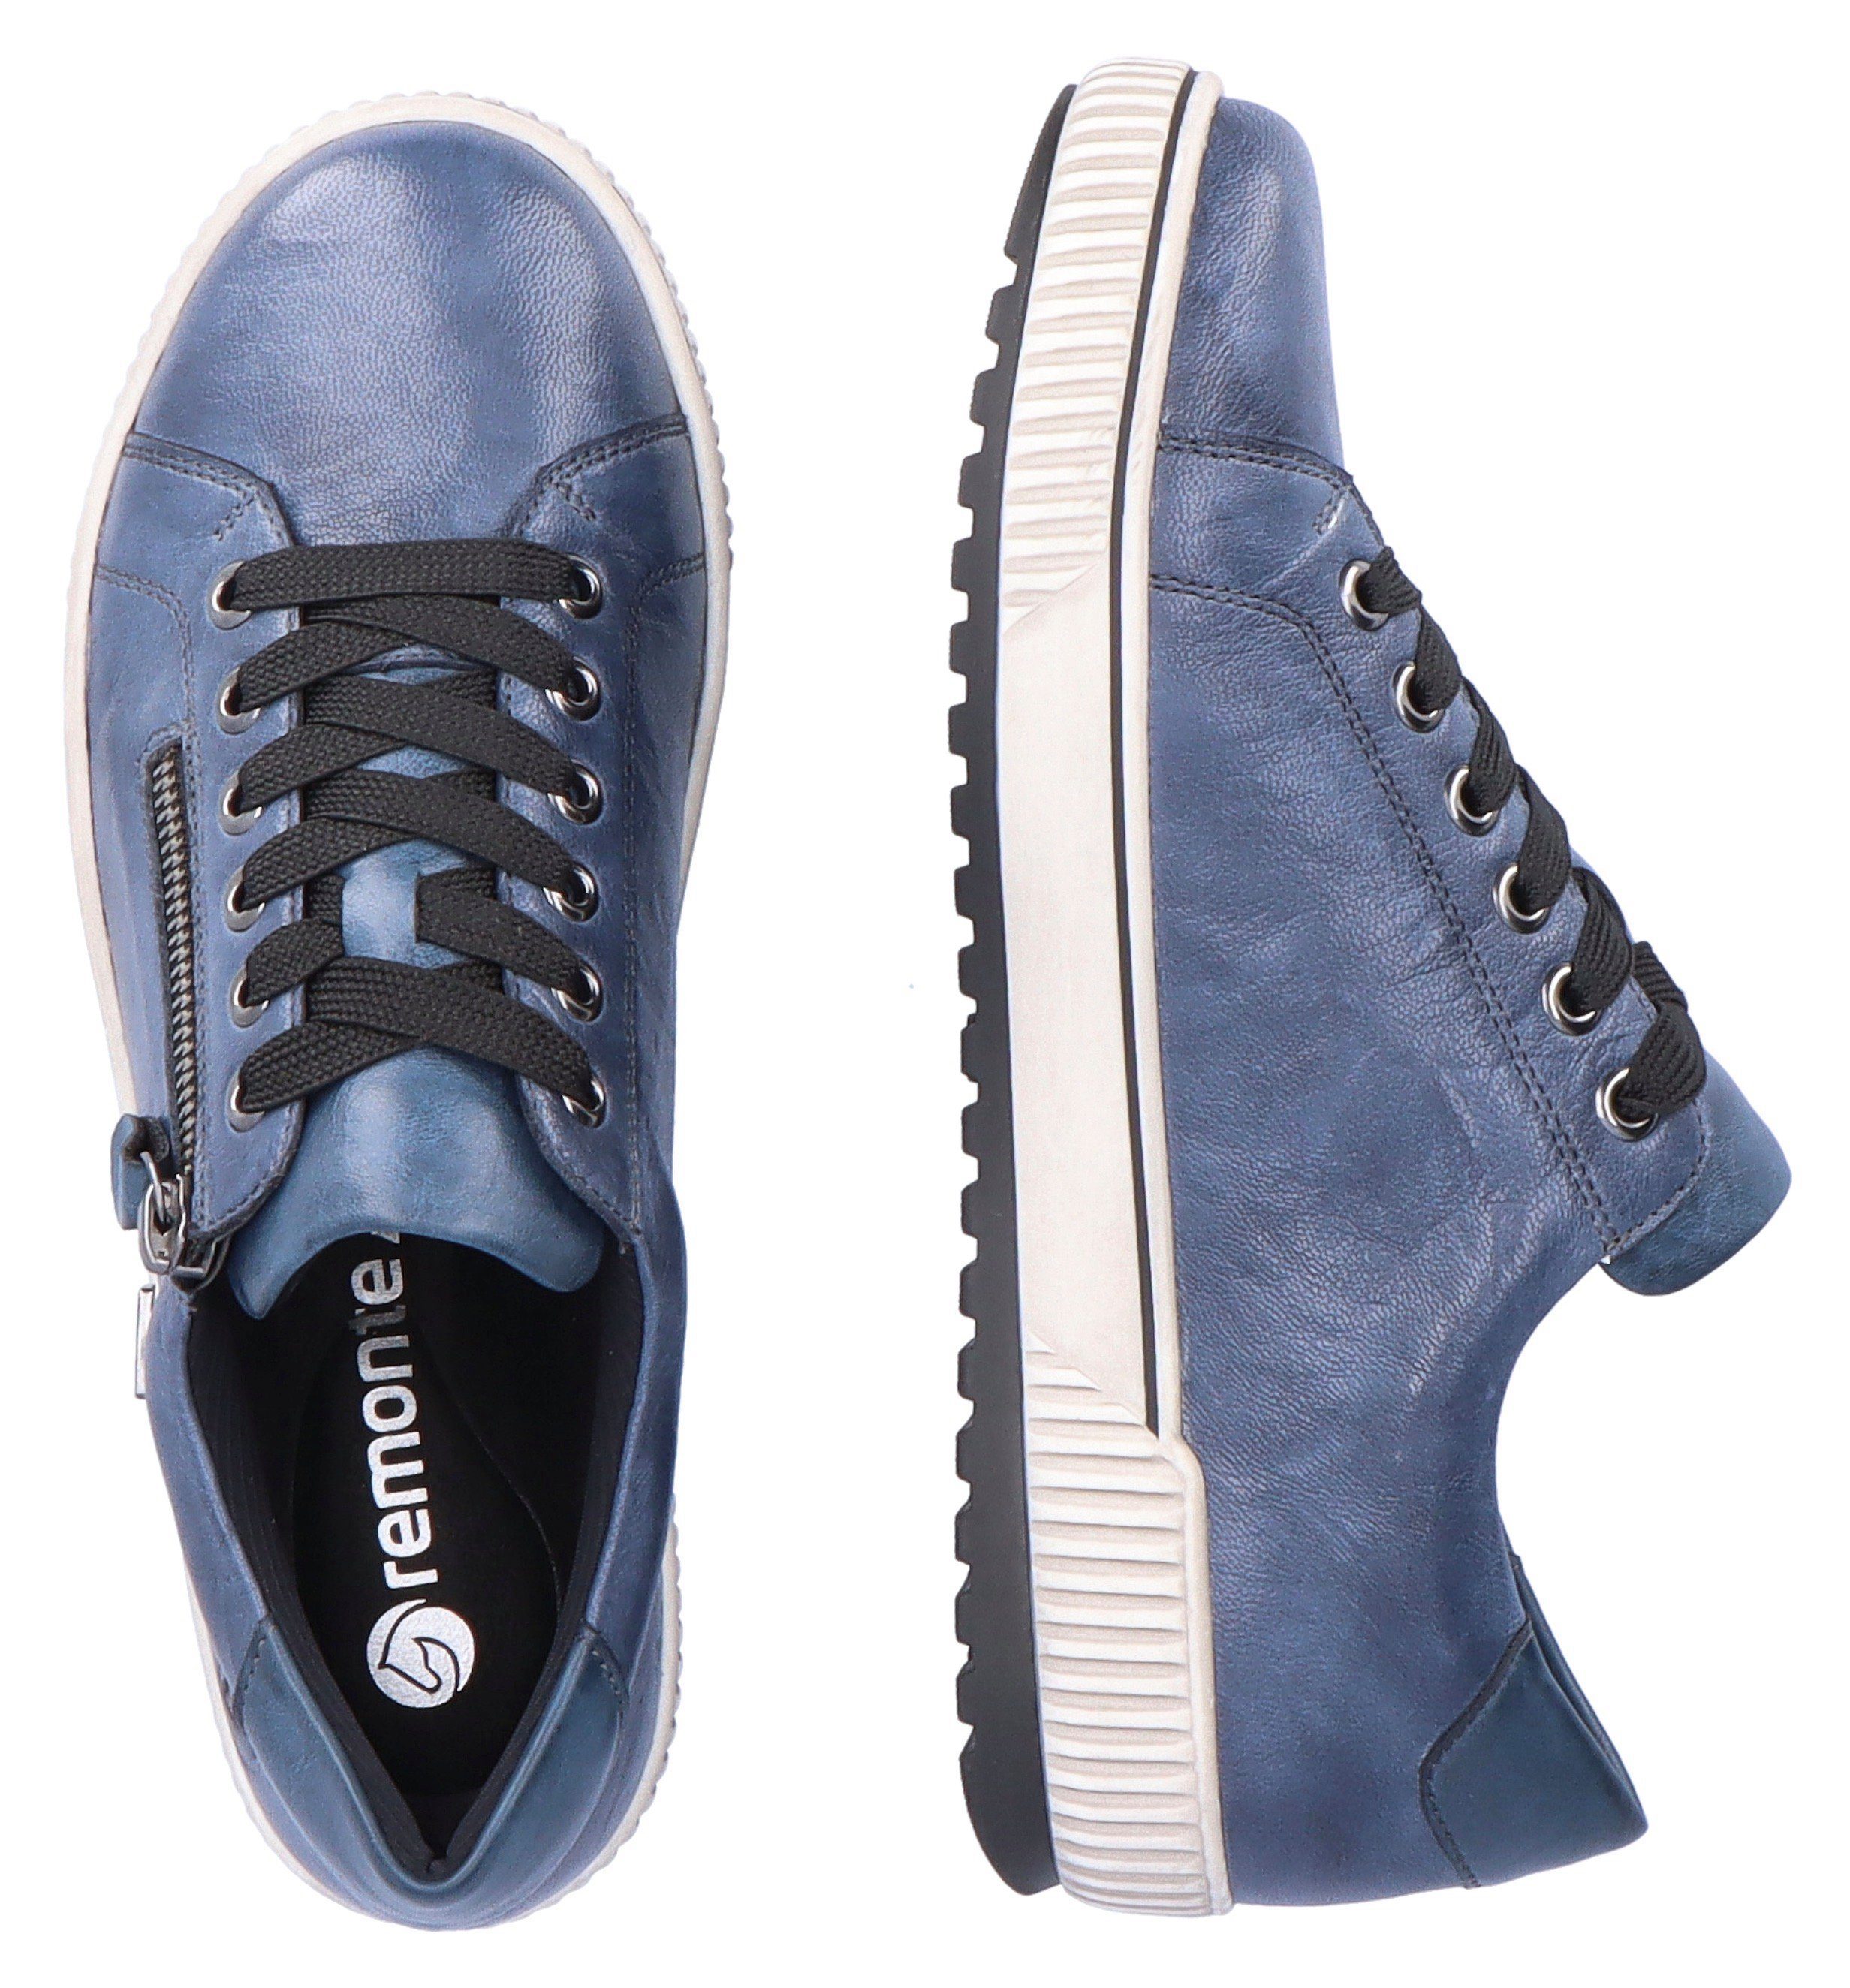 Remonte mit Sneaker Außenreißverschluss dunkelblau praktischem